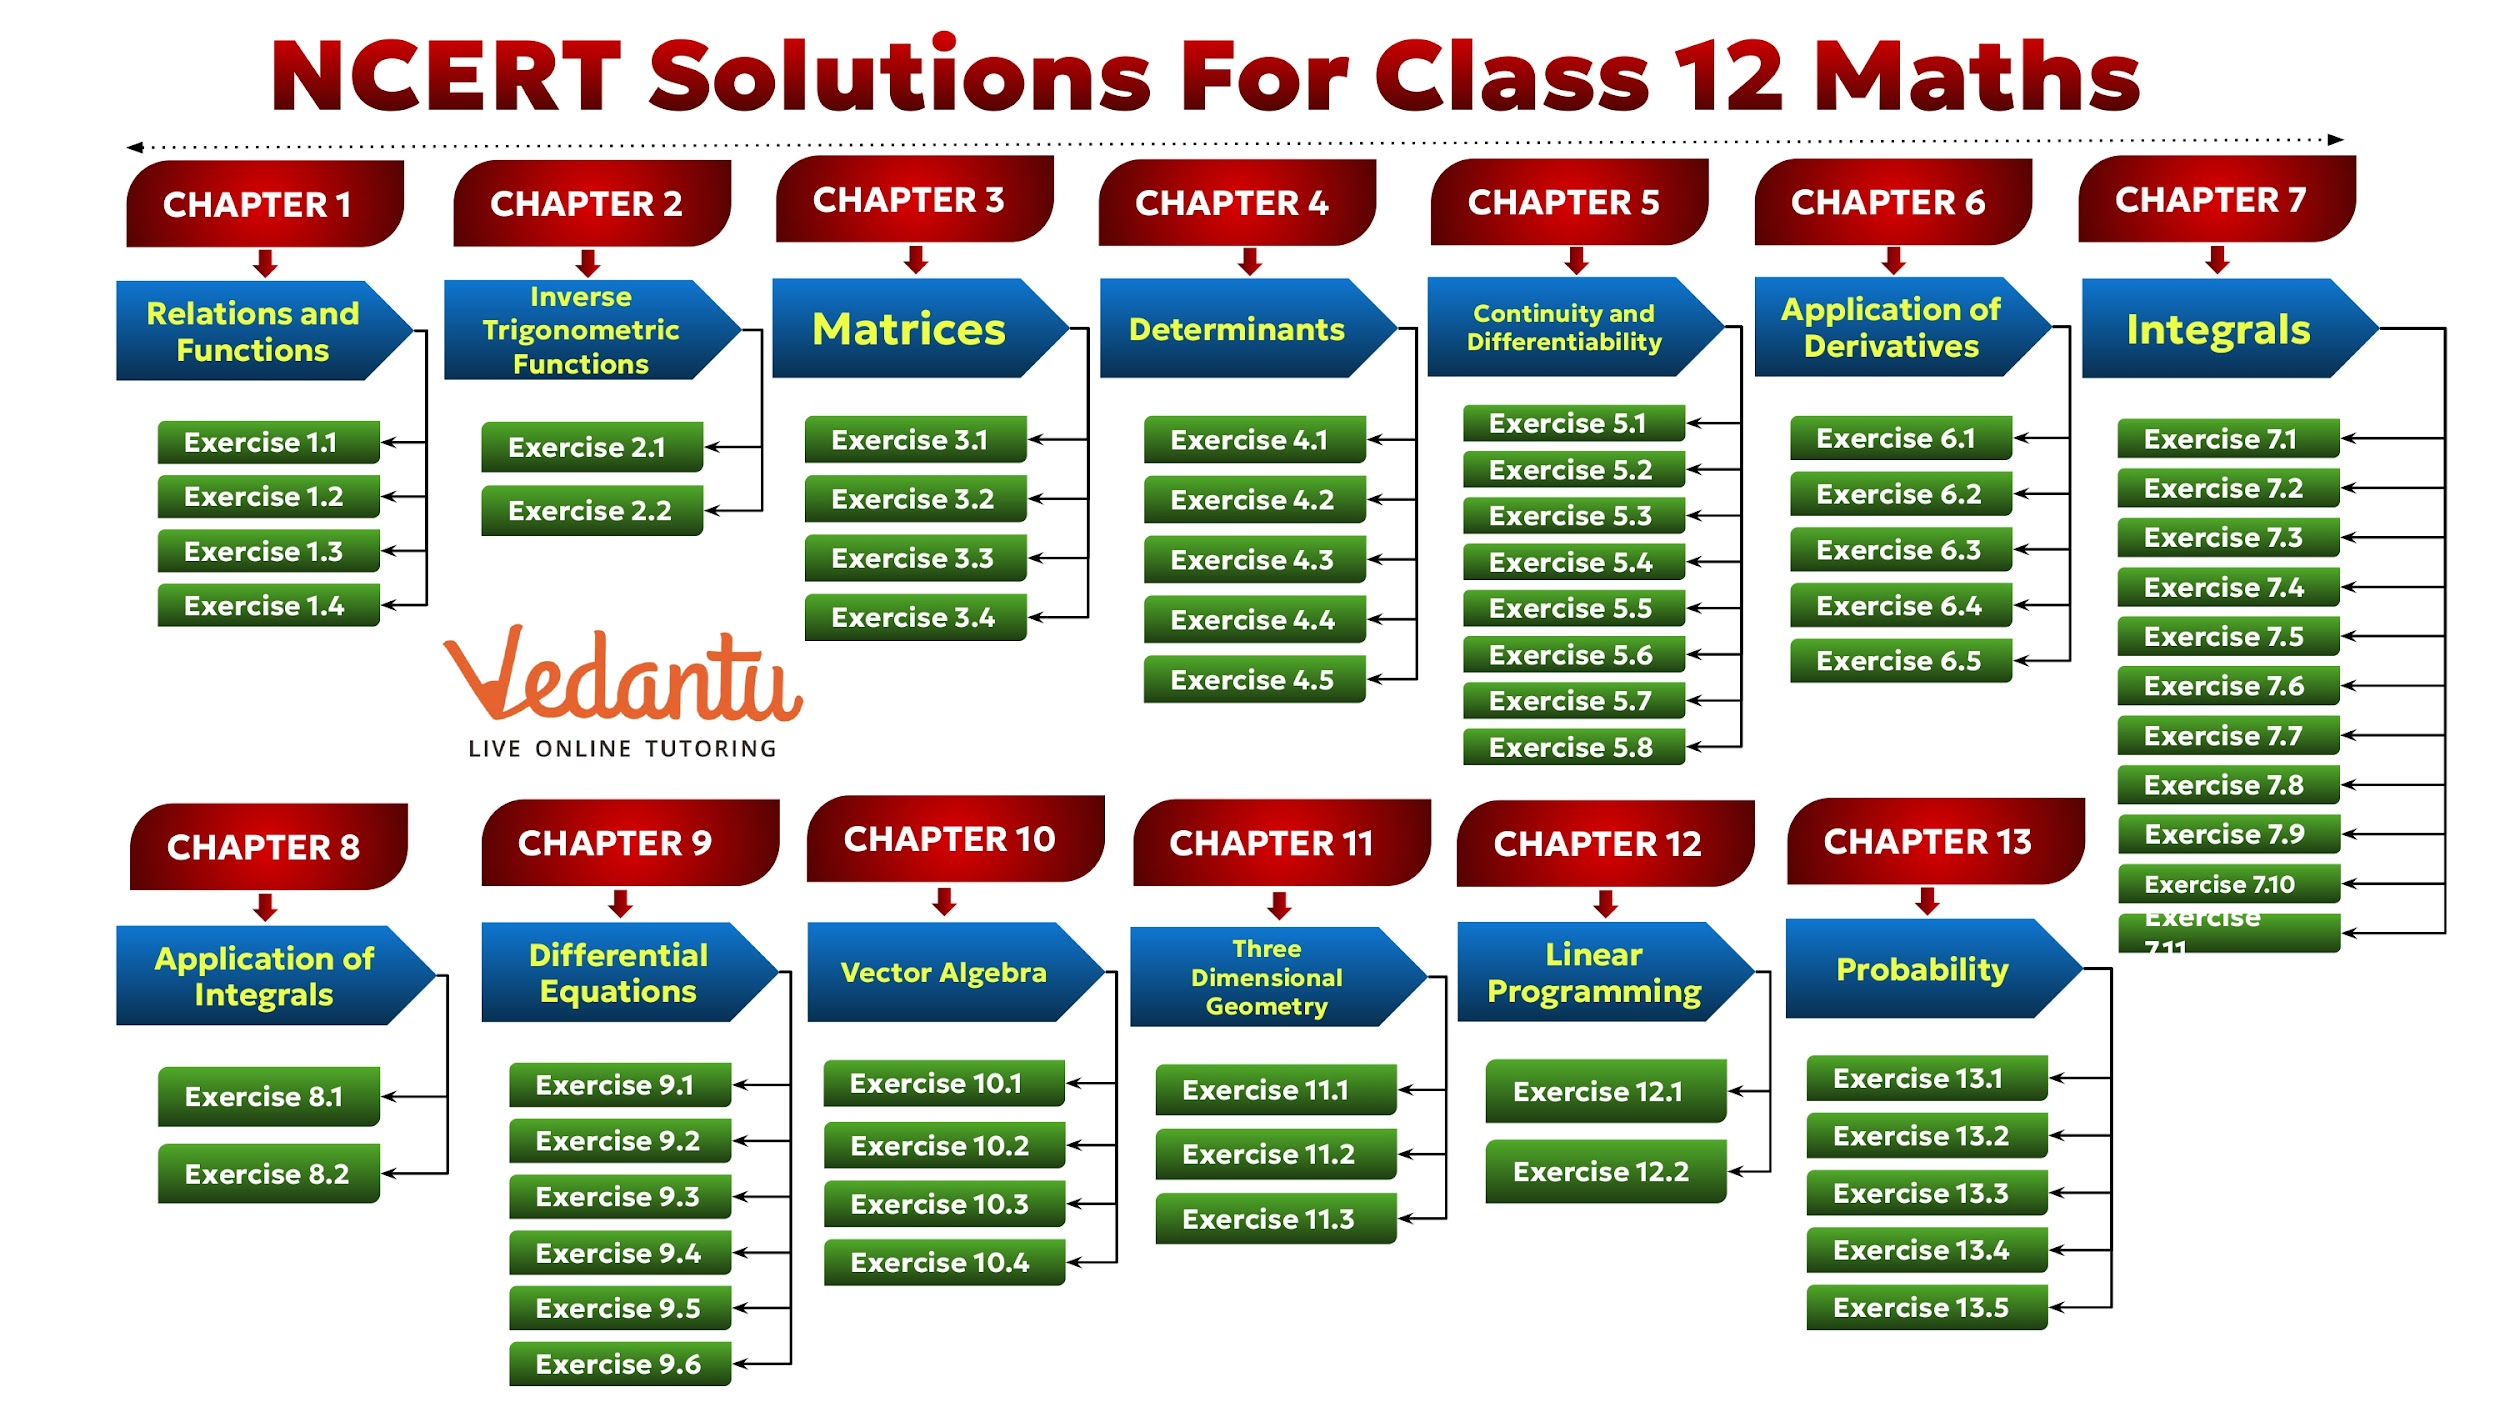 NCERT Solutions for Class 12 Maths Syllabus